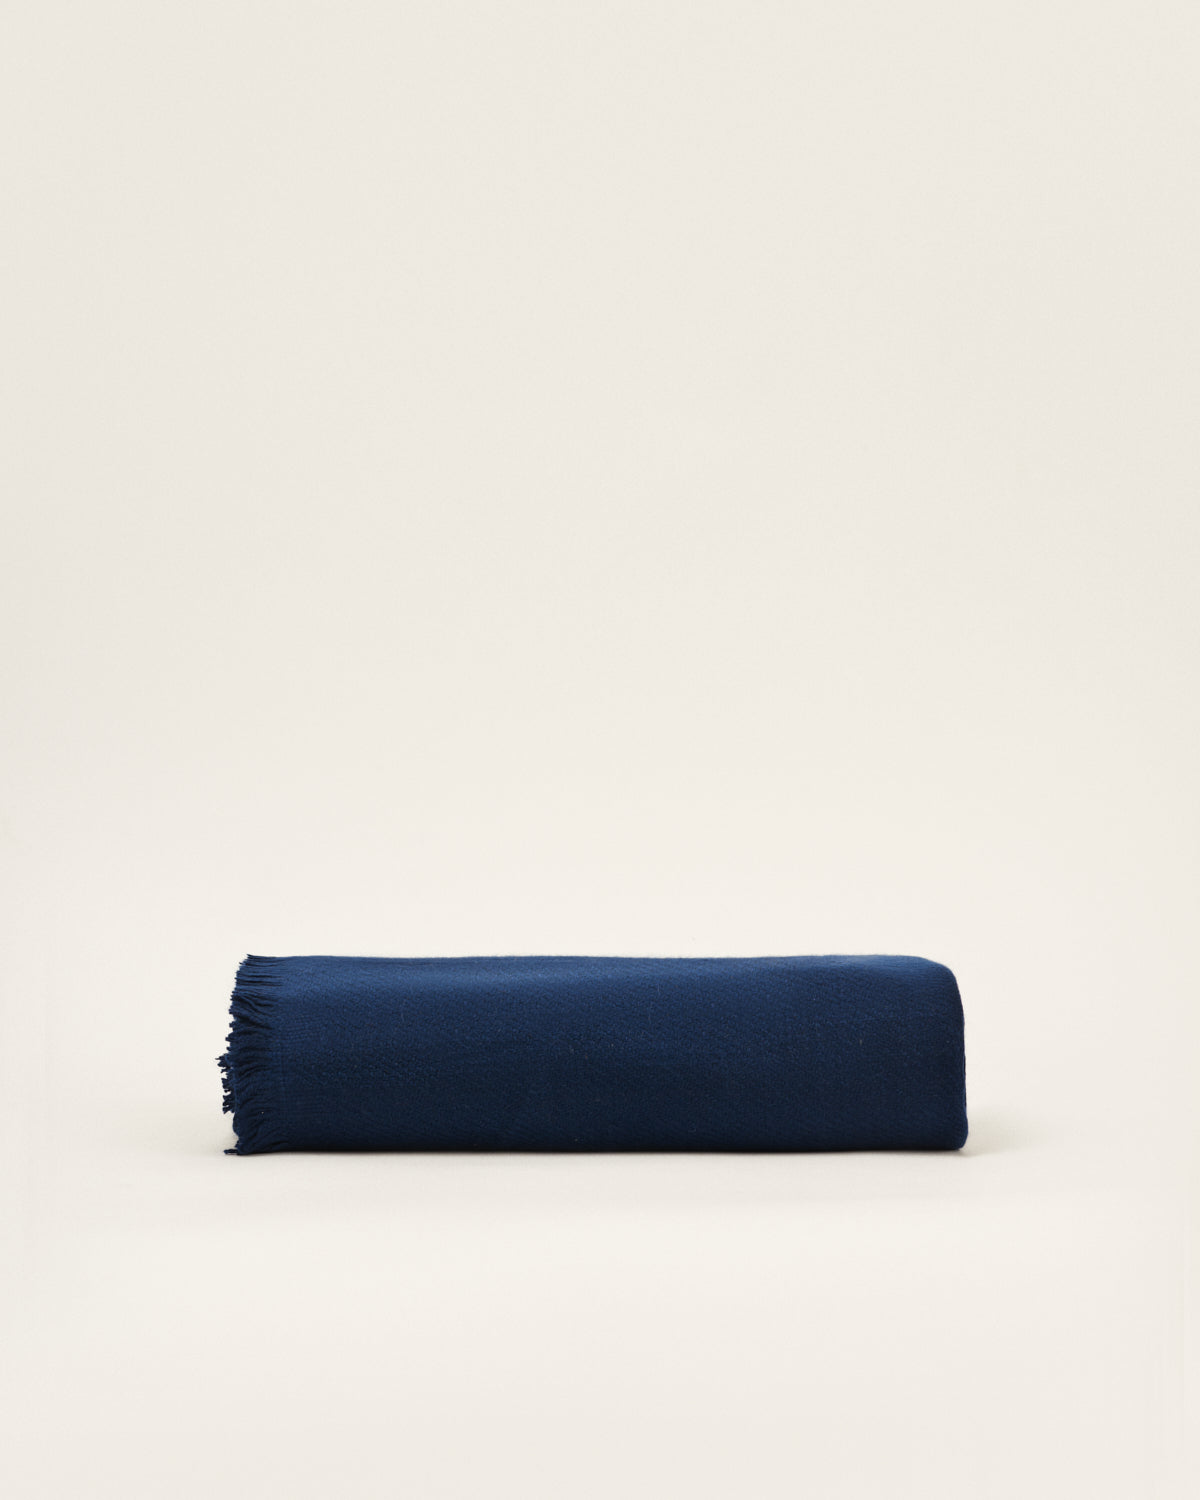 Dark blue cashmere blanket